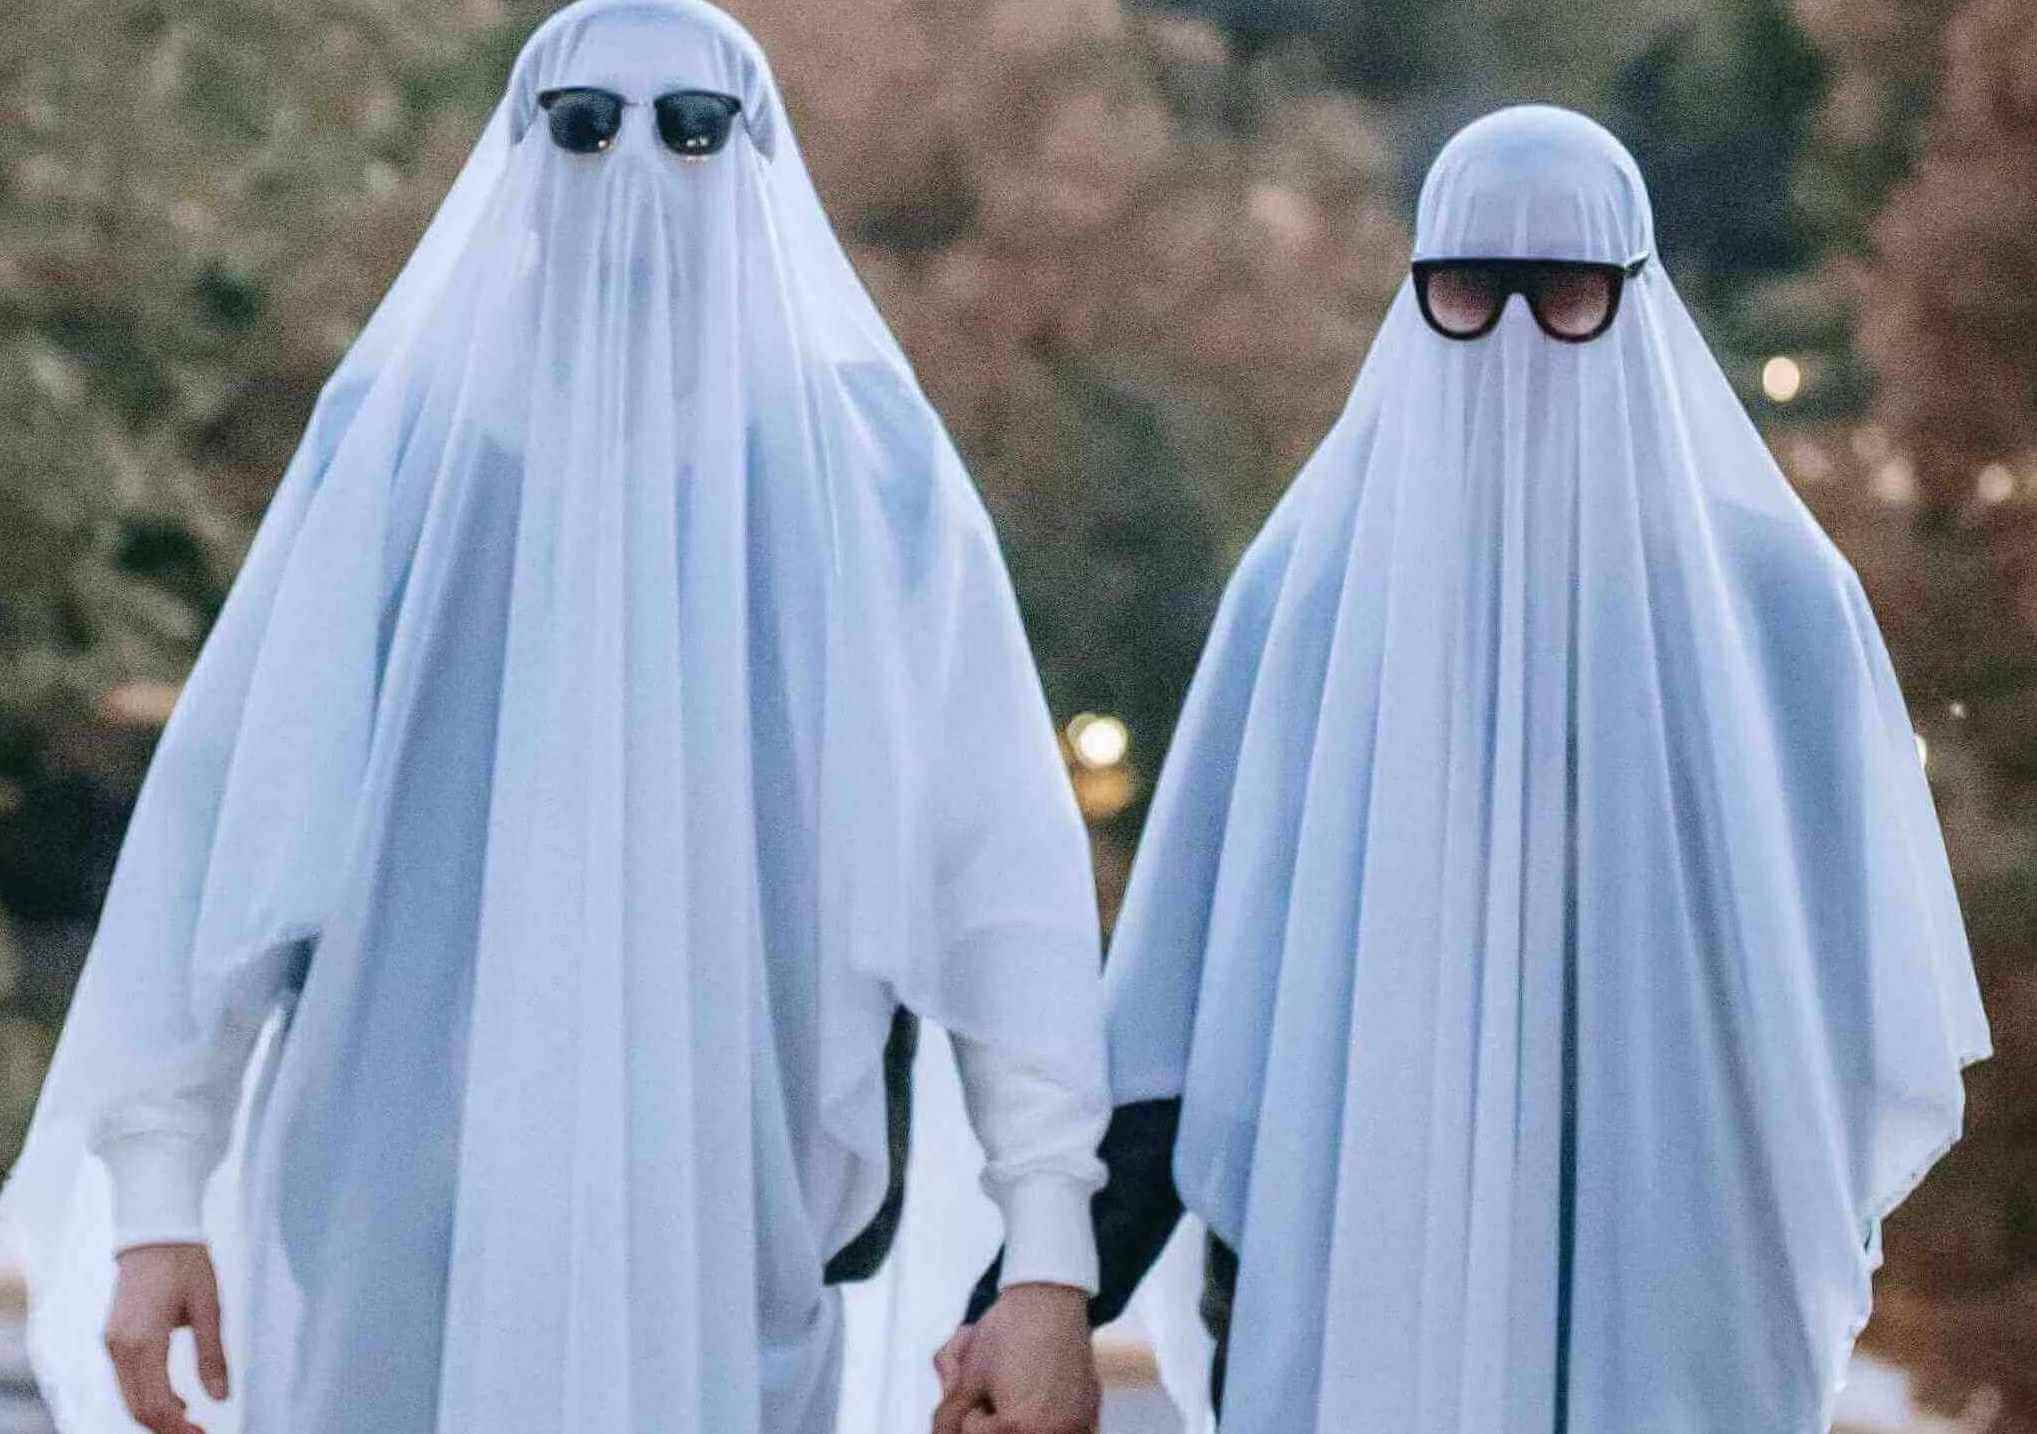 Zwei Menschen verkleidet als Geister mit einer Sonnenbrille in einer Horrorkomödie.